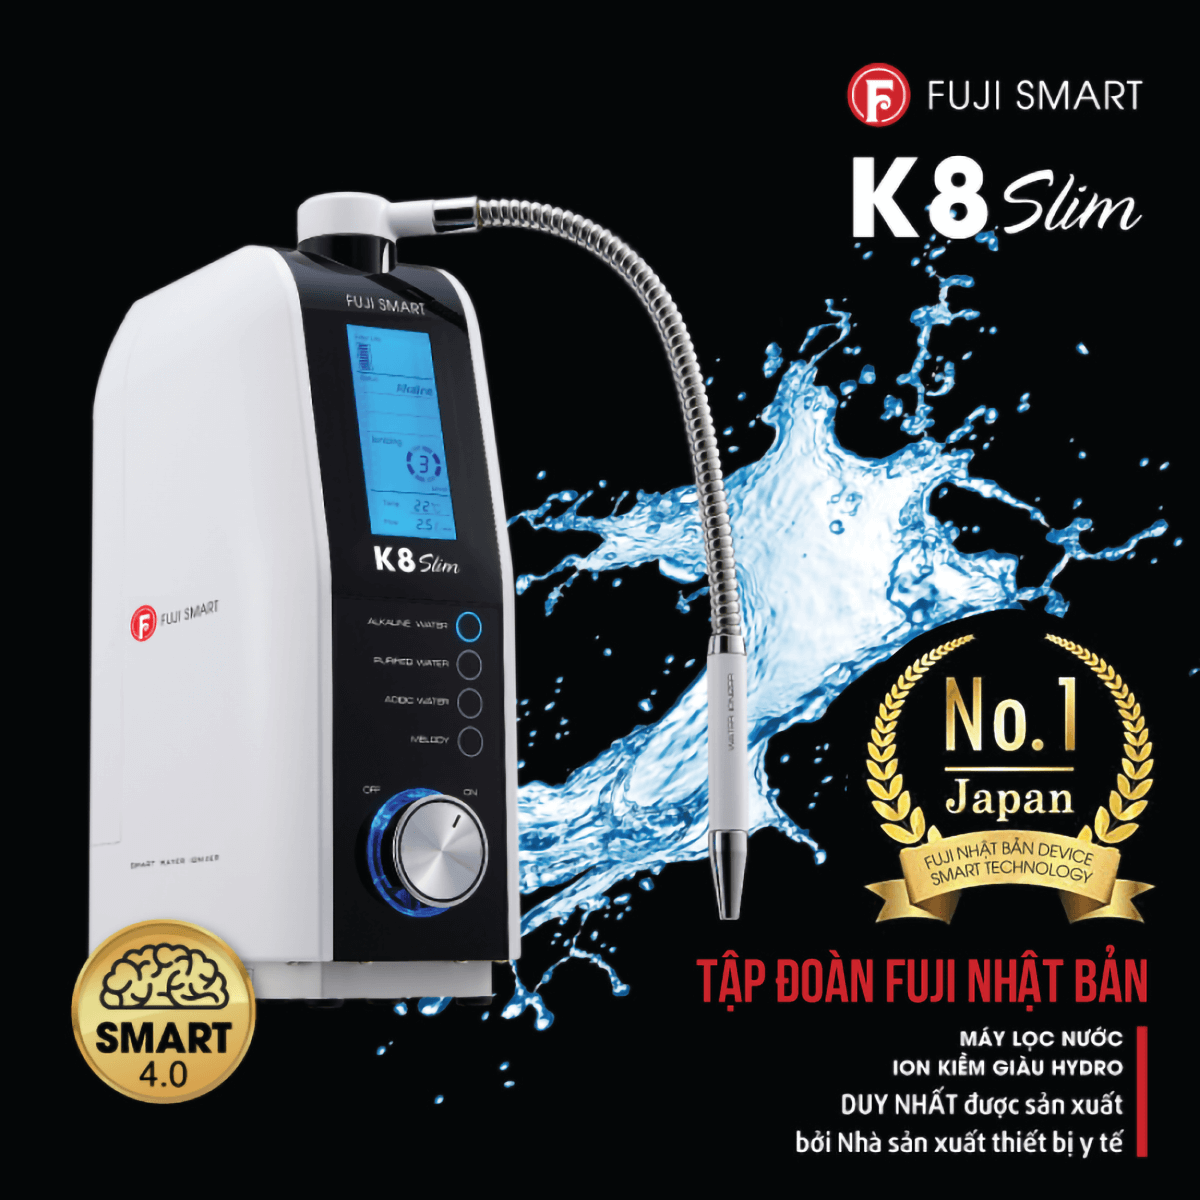 Máy lọc nước iON kiềm Fuji Smart K8 Slim giá rẻ